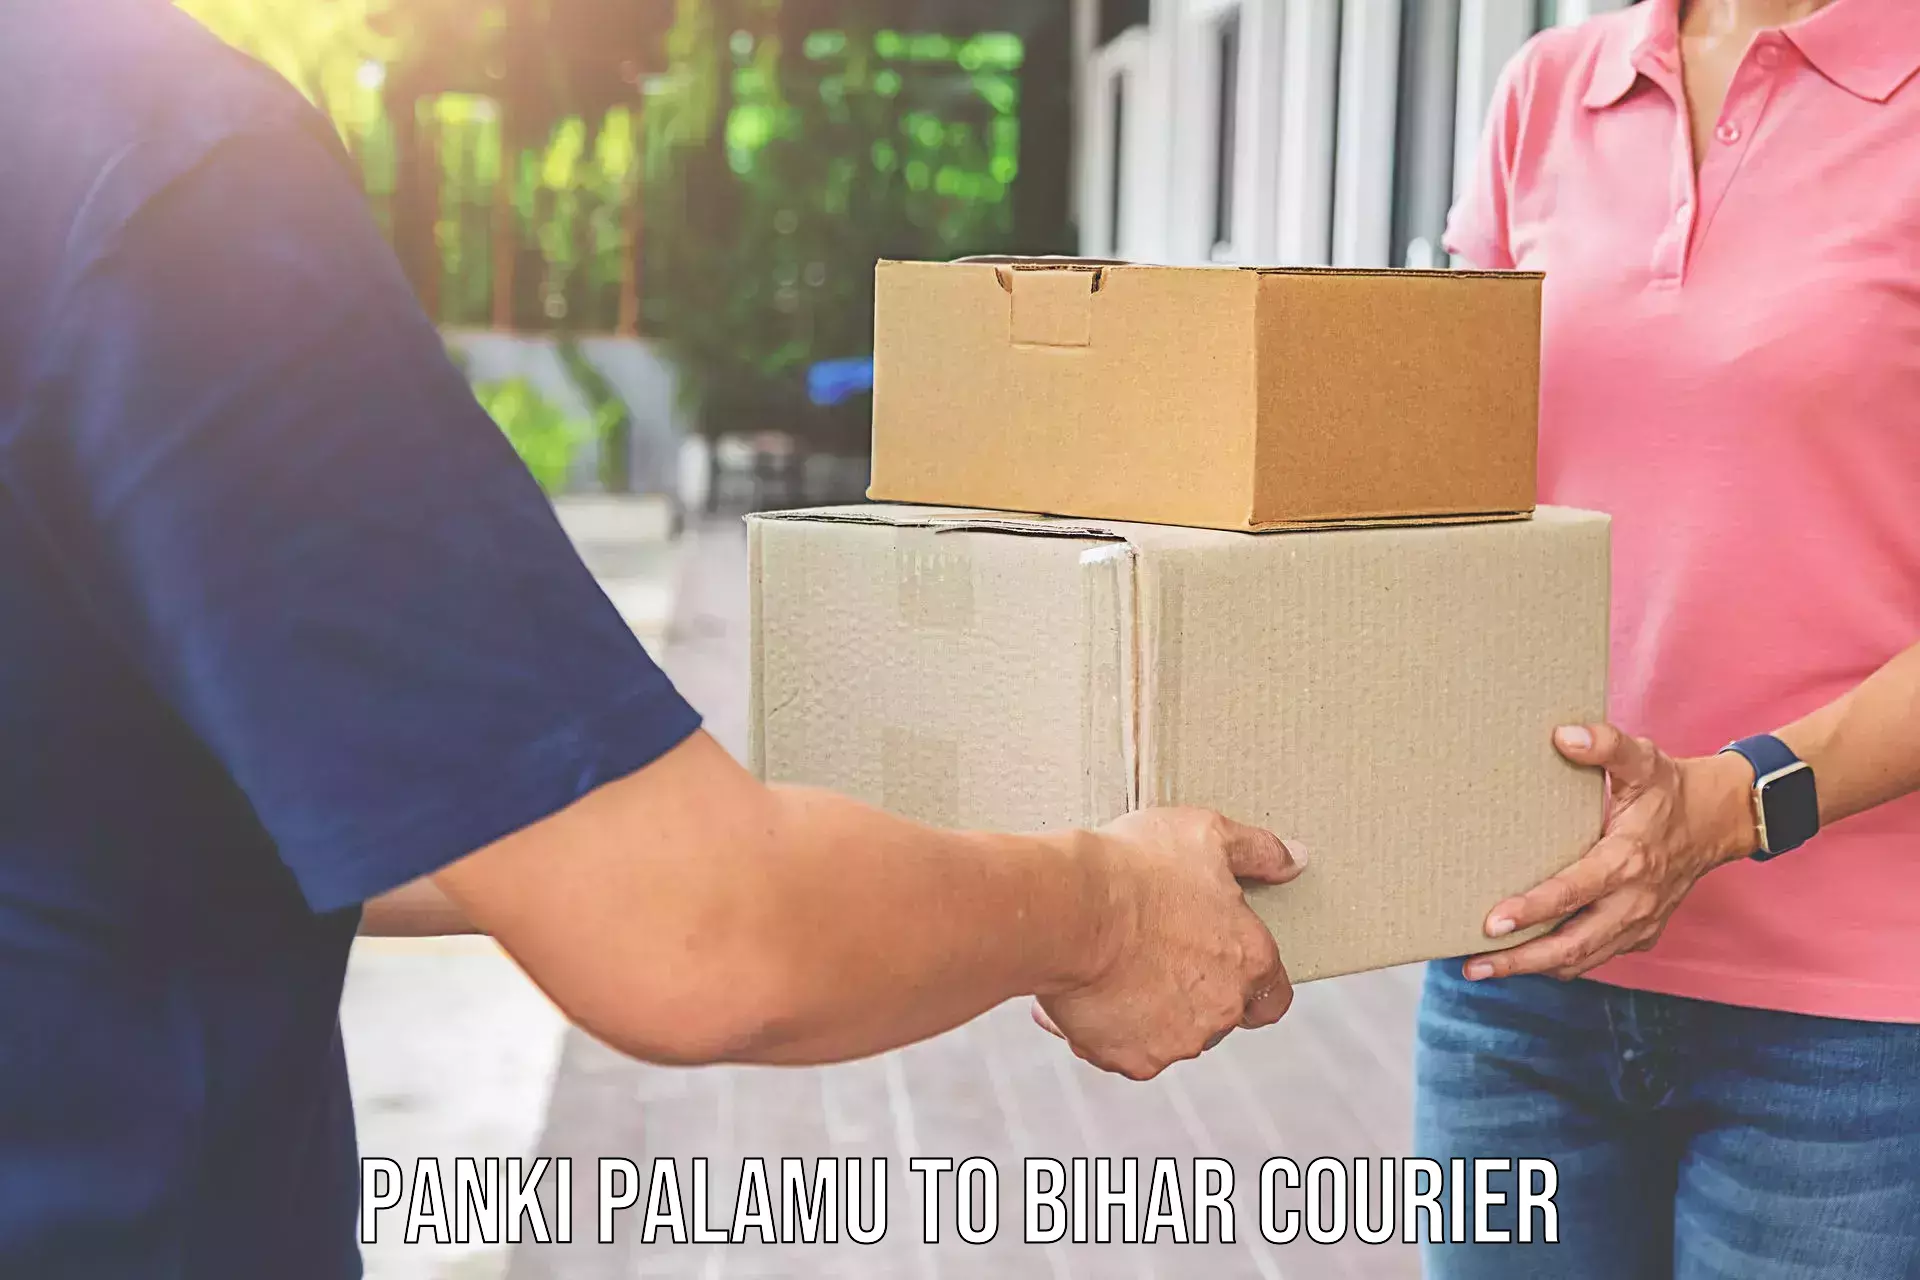 Furniture moving experts Panki Palamu to Fatwah